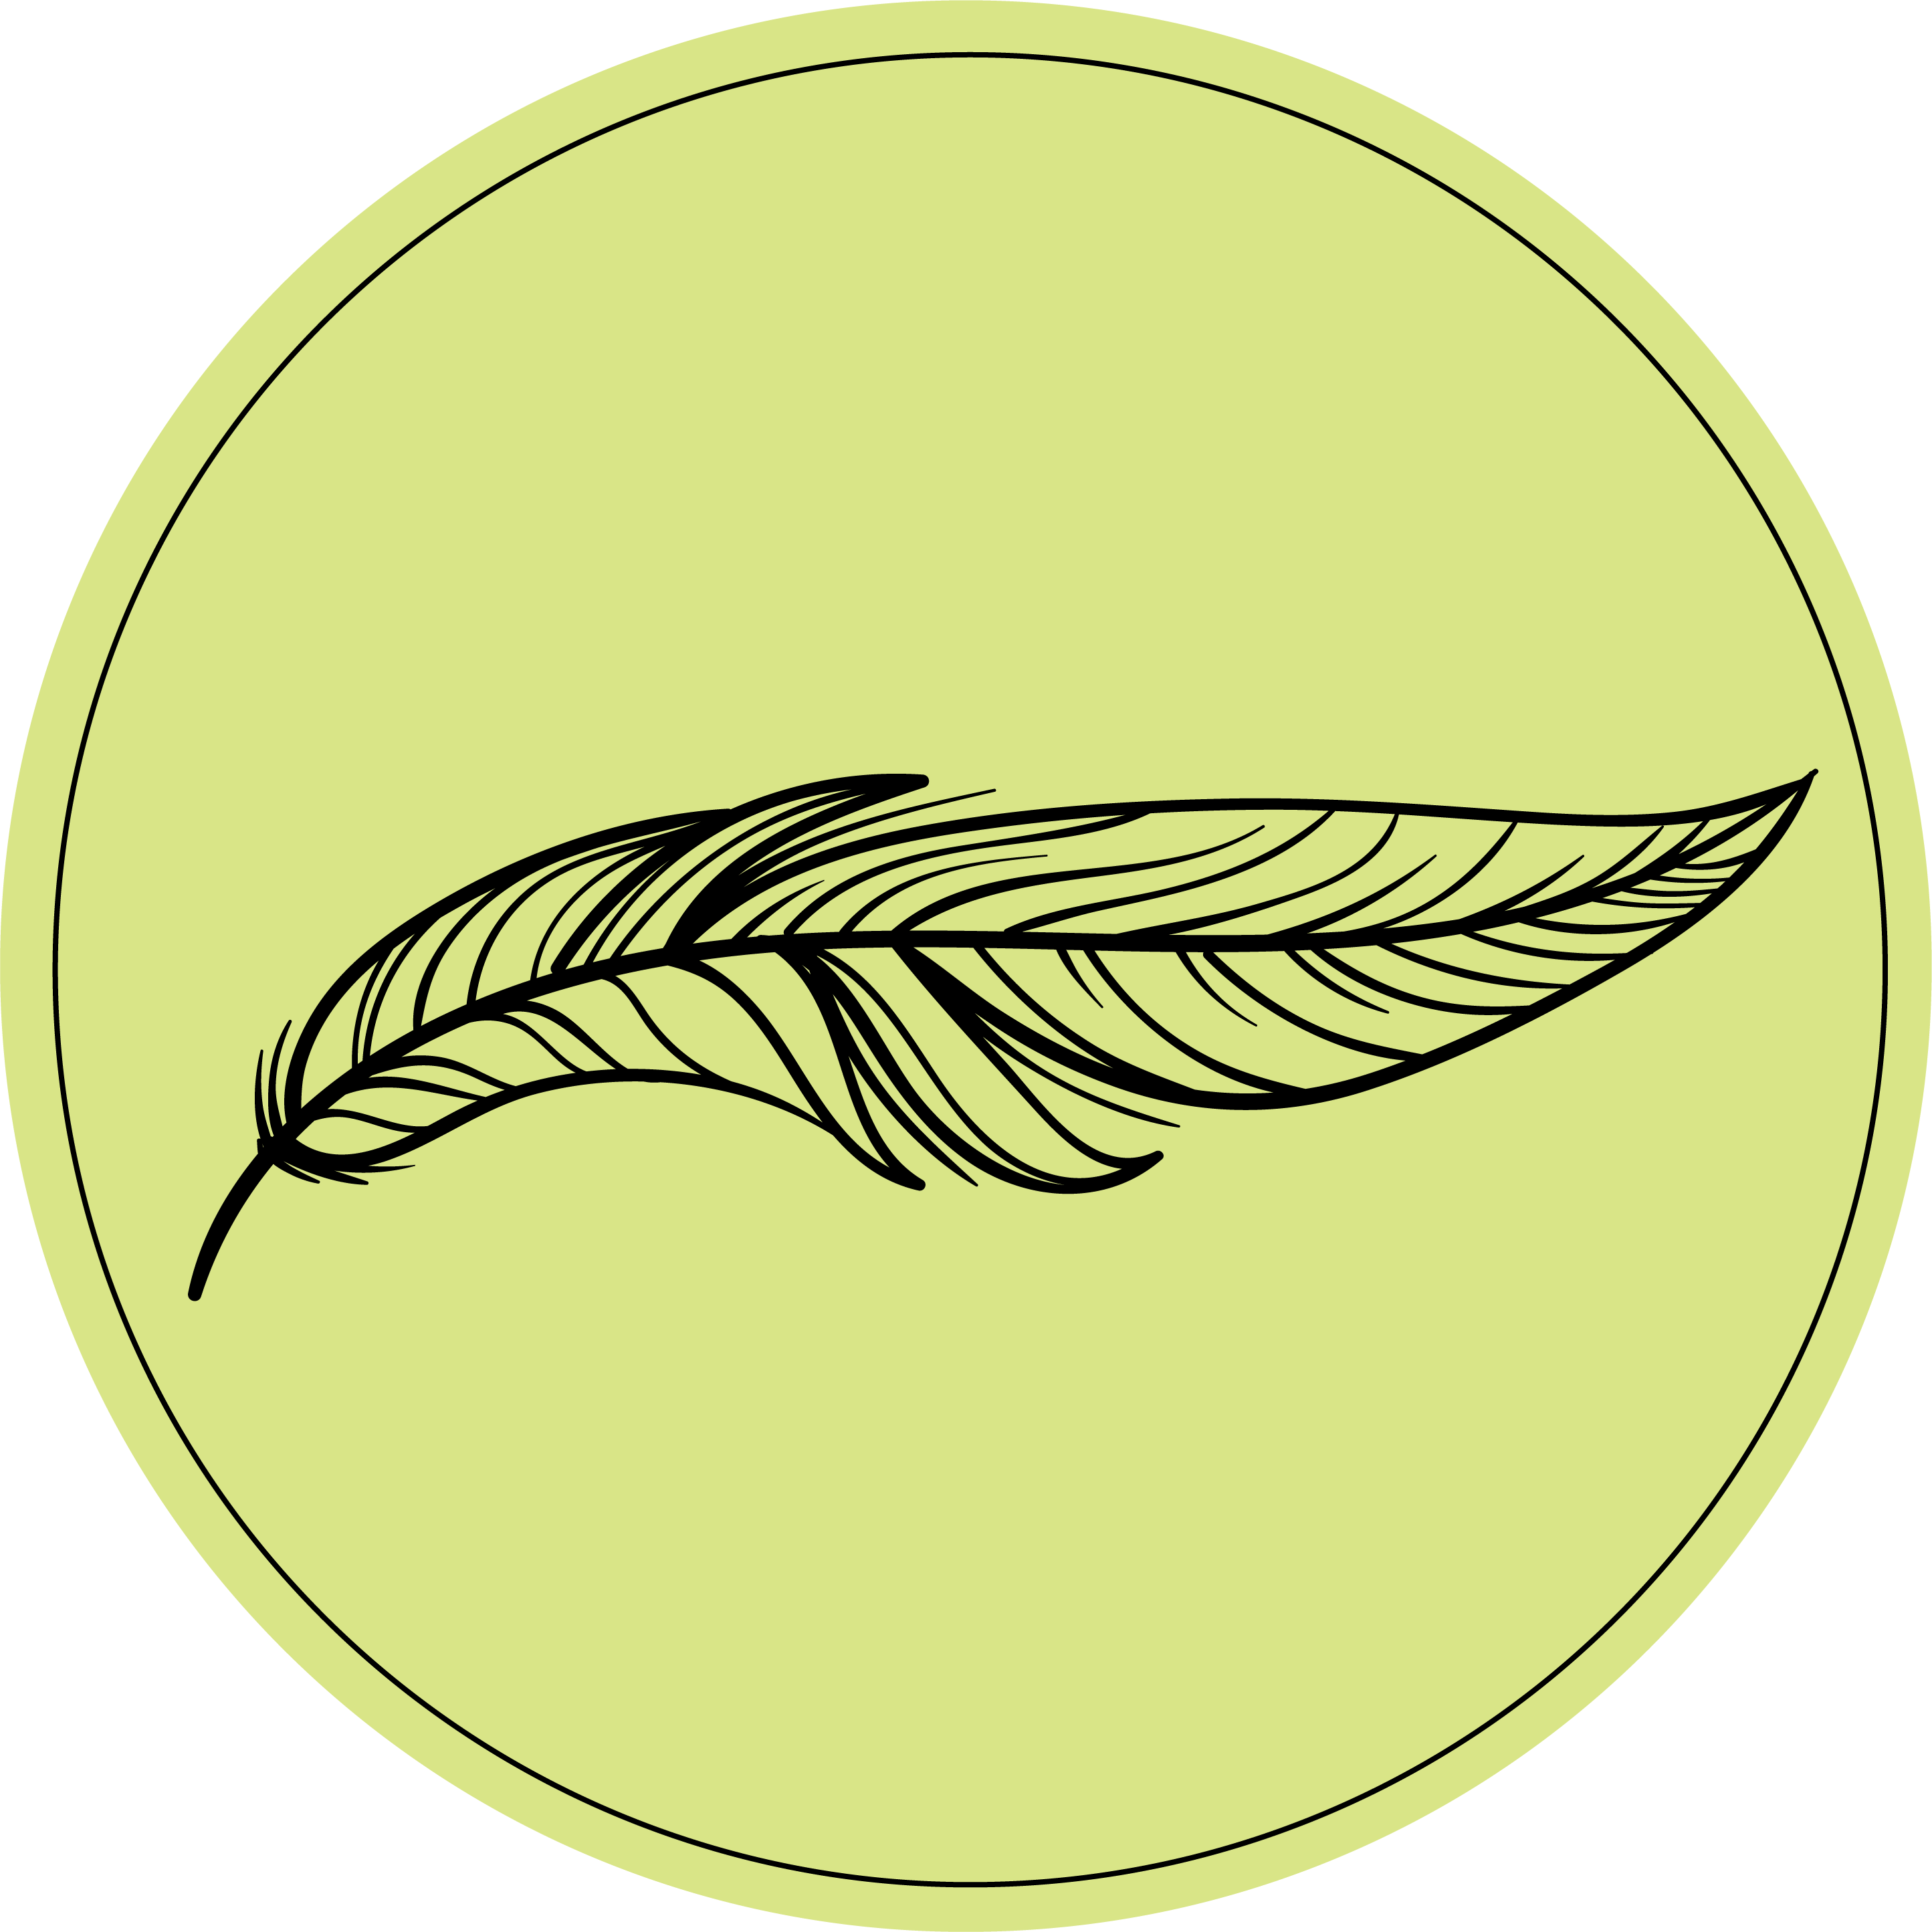 green circular logo with a black feather 